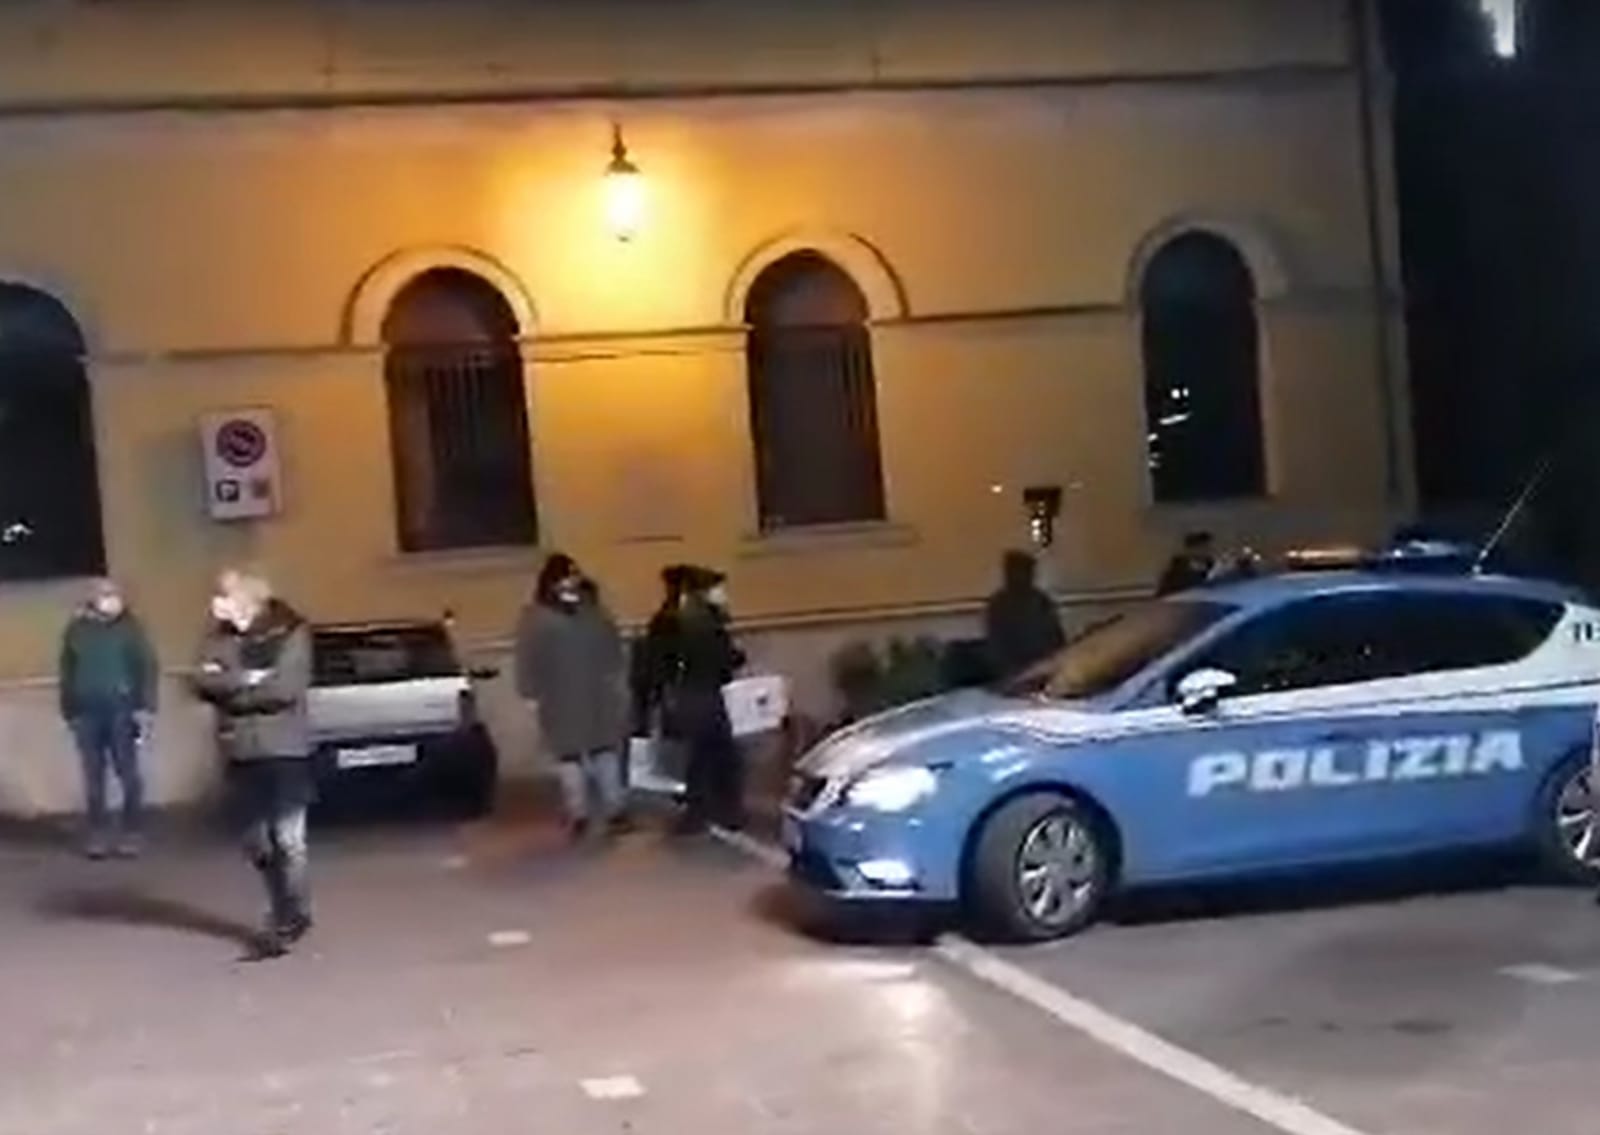 Teramo – Maxi assembramento di giovani in piazza Orsini, arrivano forze dell’ordine